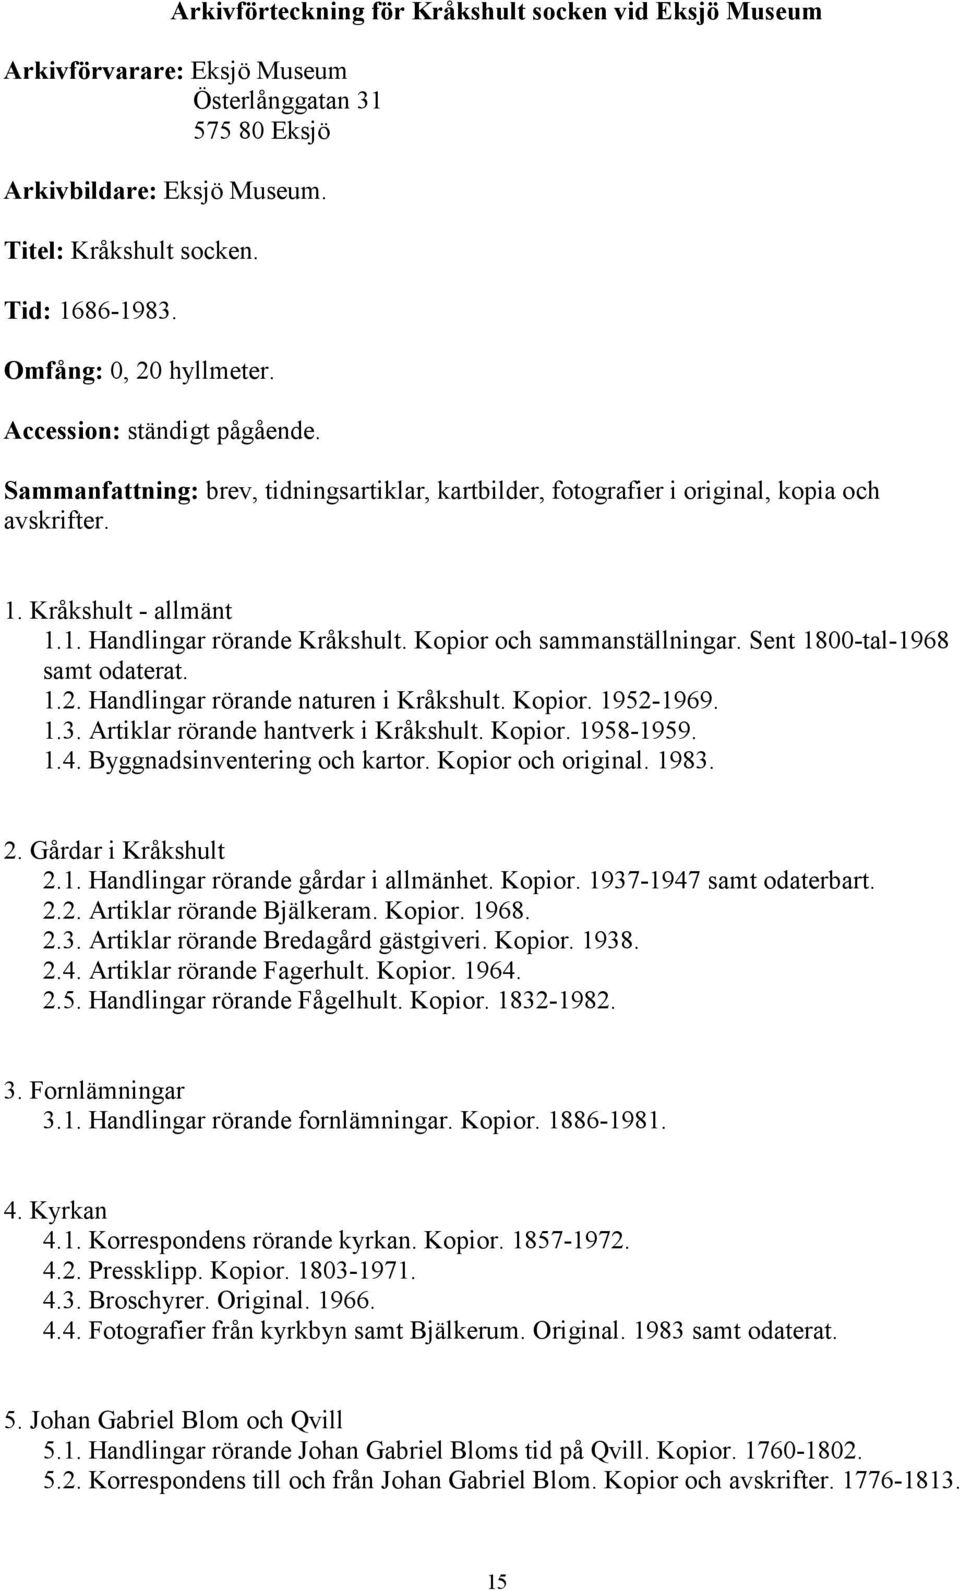 Kopior och sammanställningar. Sent 1800-tal-1968 samt odaterat. 1.2. Handlingar rörande naturen i Kråkshult. Kopior. 1952-1969. 1.3. Artiklar rörande hantverk i Kråkshult. Kopior. 1958-1959. 1.4.